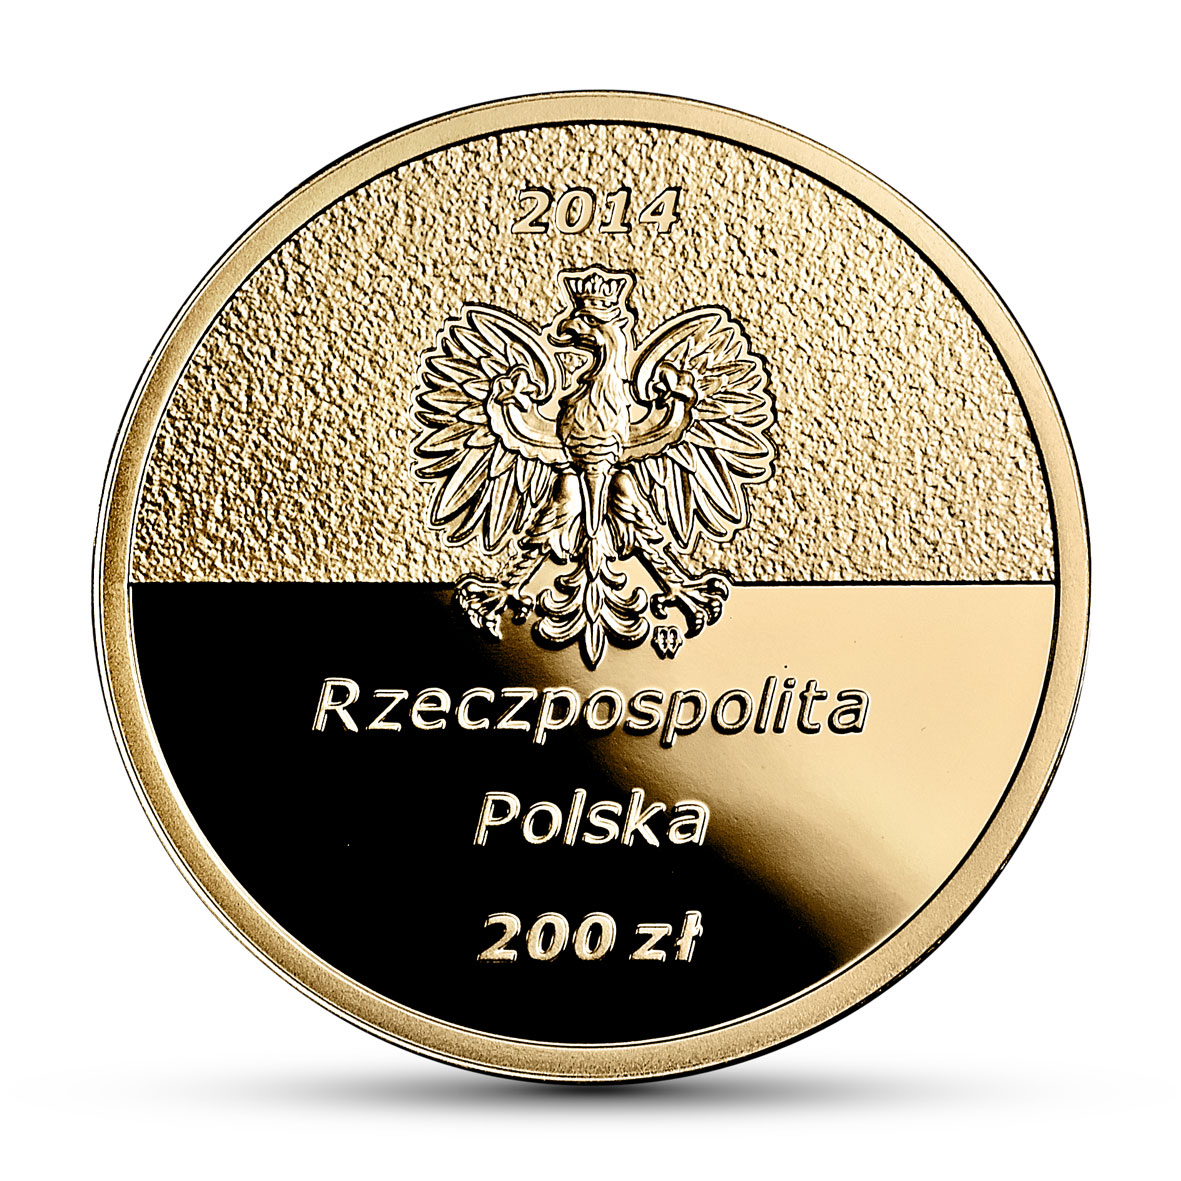 PL 200 Zloty 2014 monogram MW